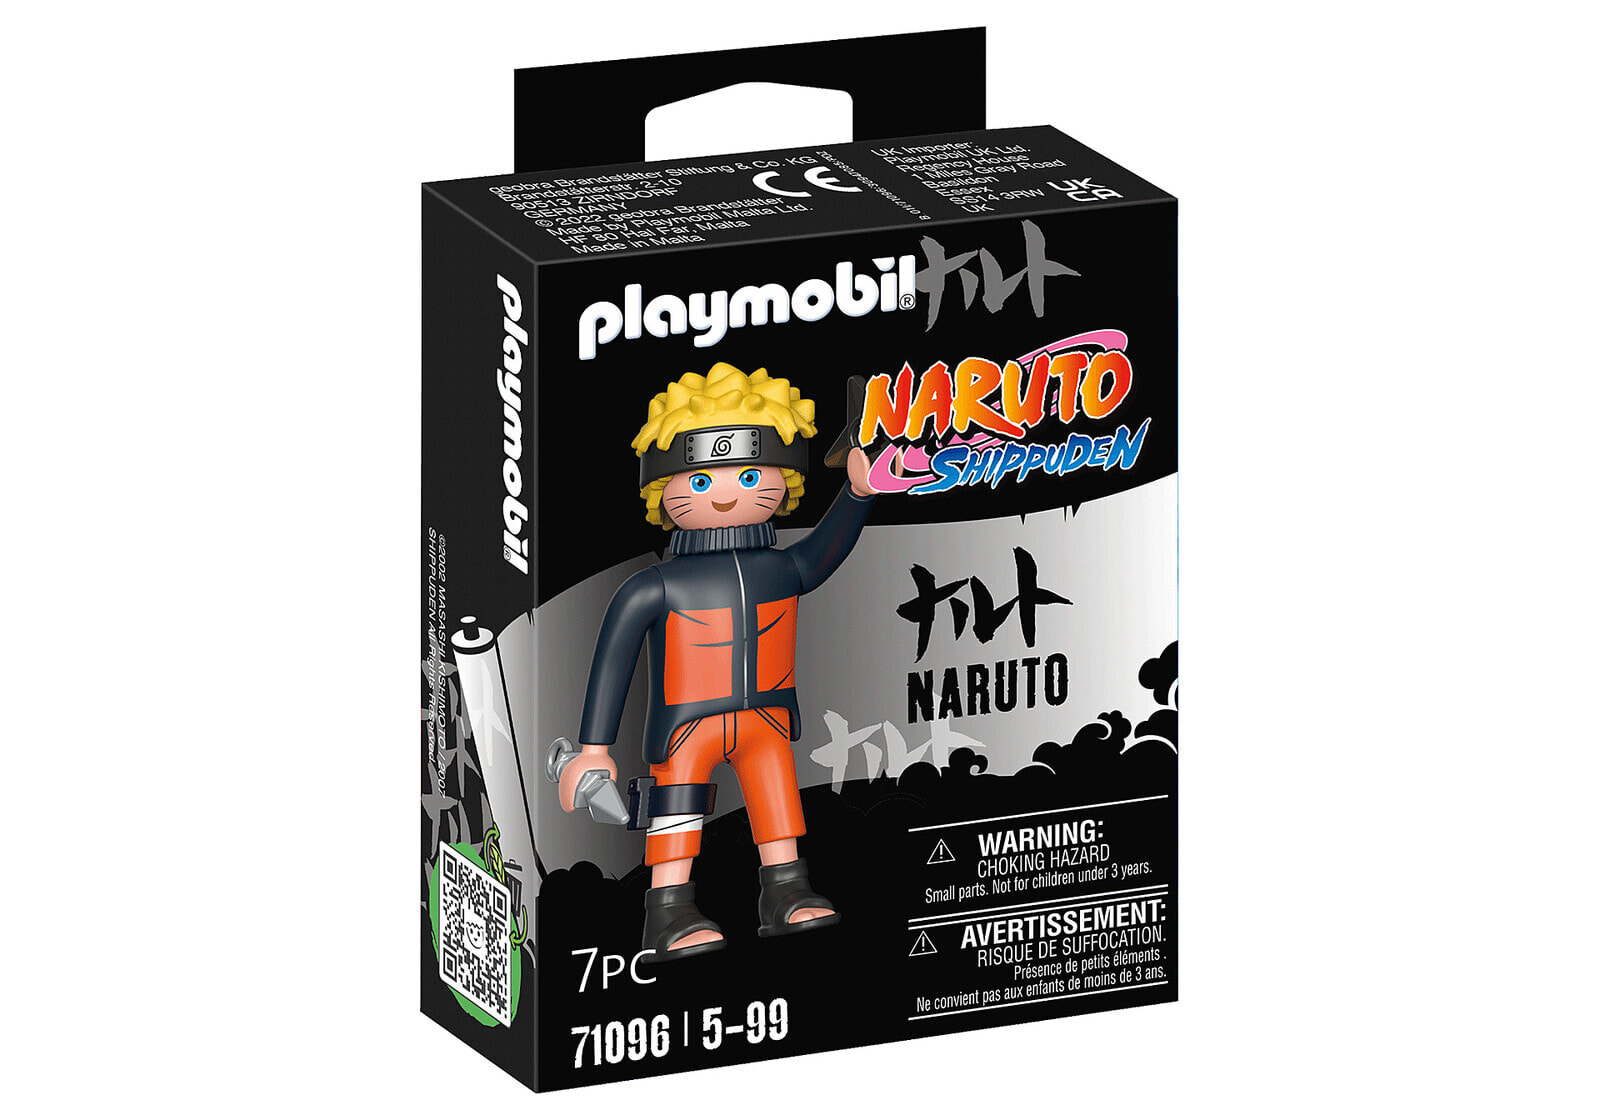 PLAYMOBIL Playm. Naruto 71096